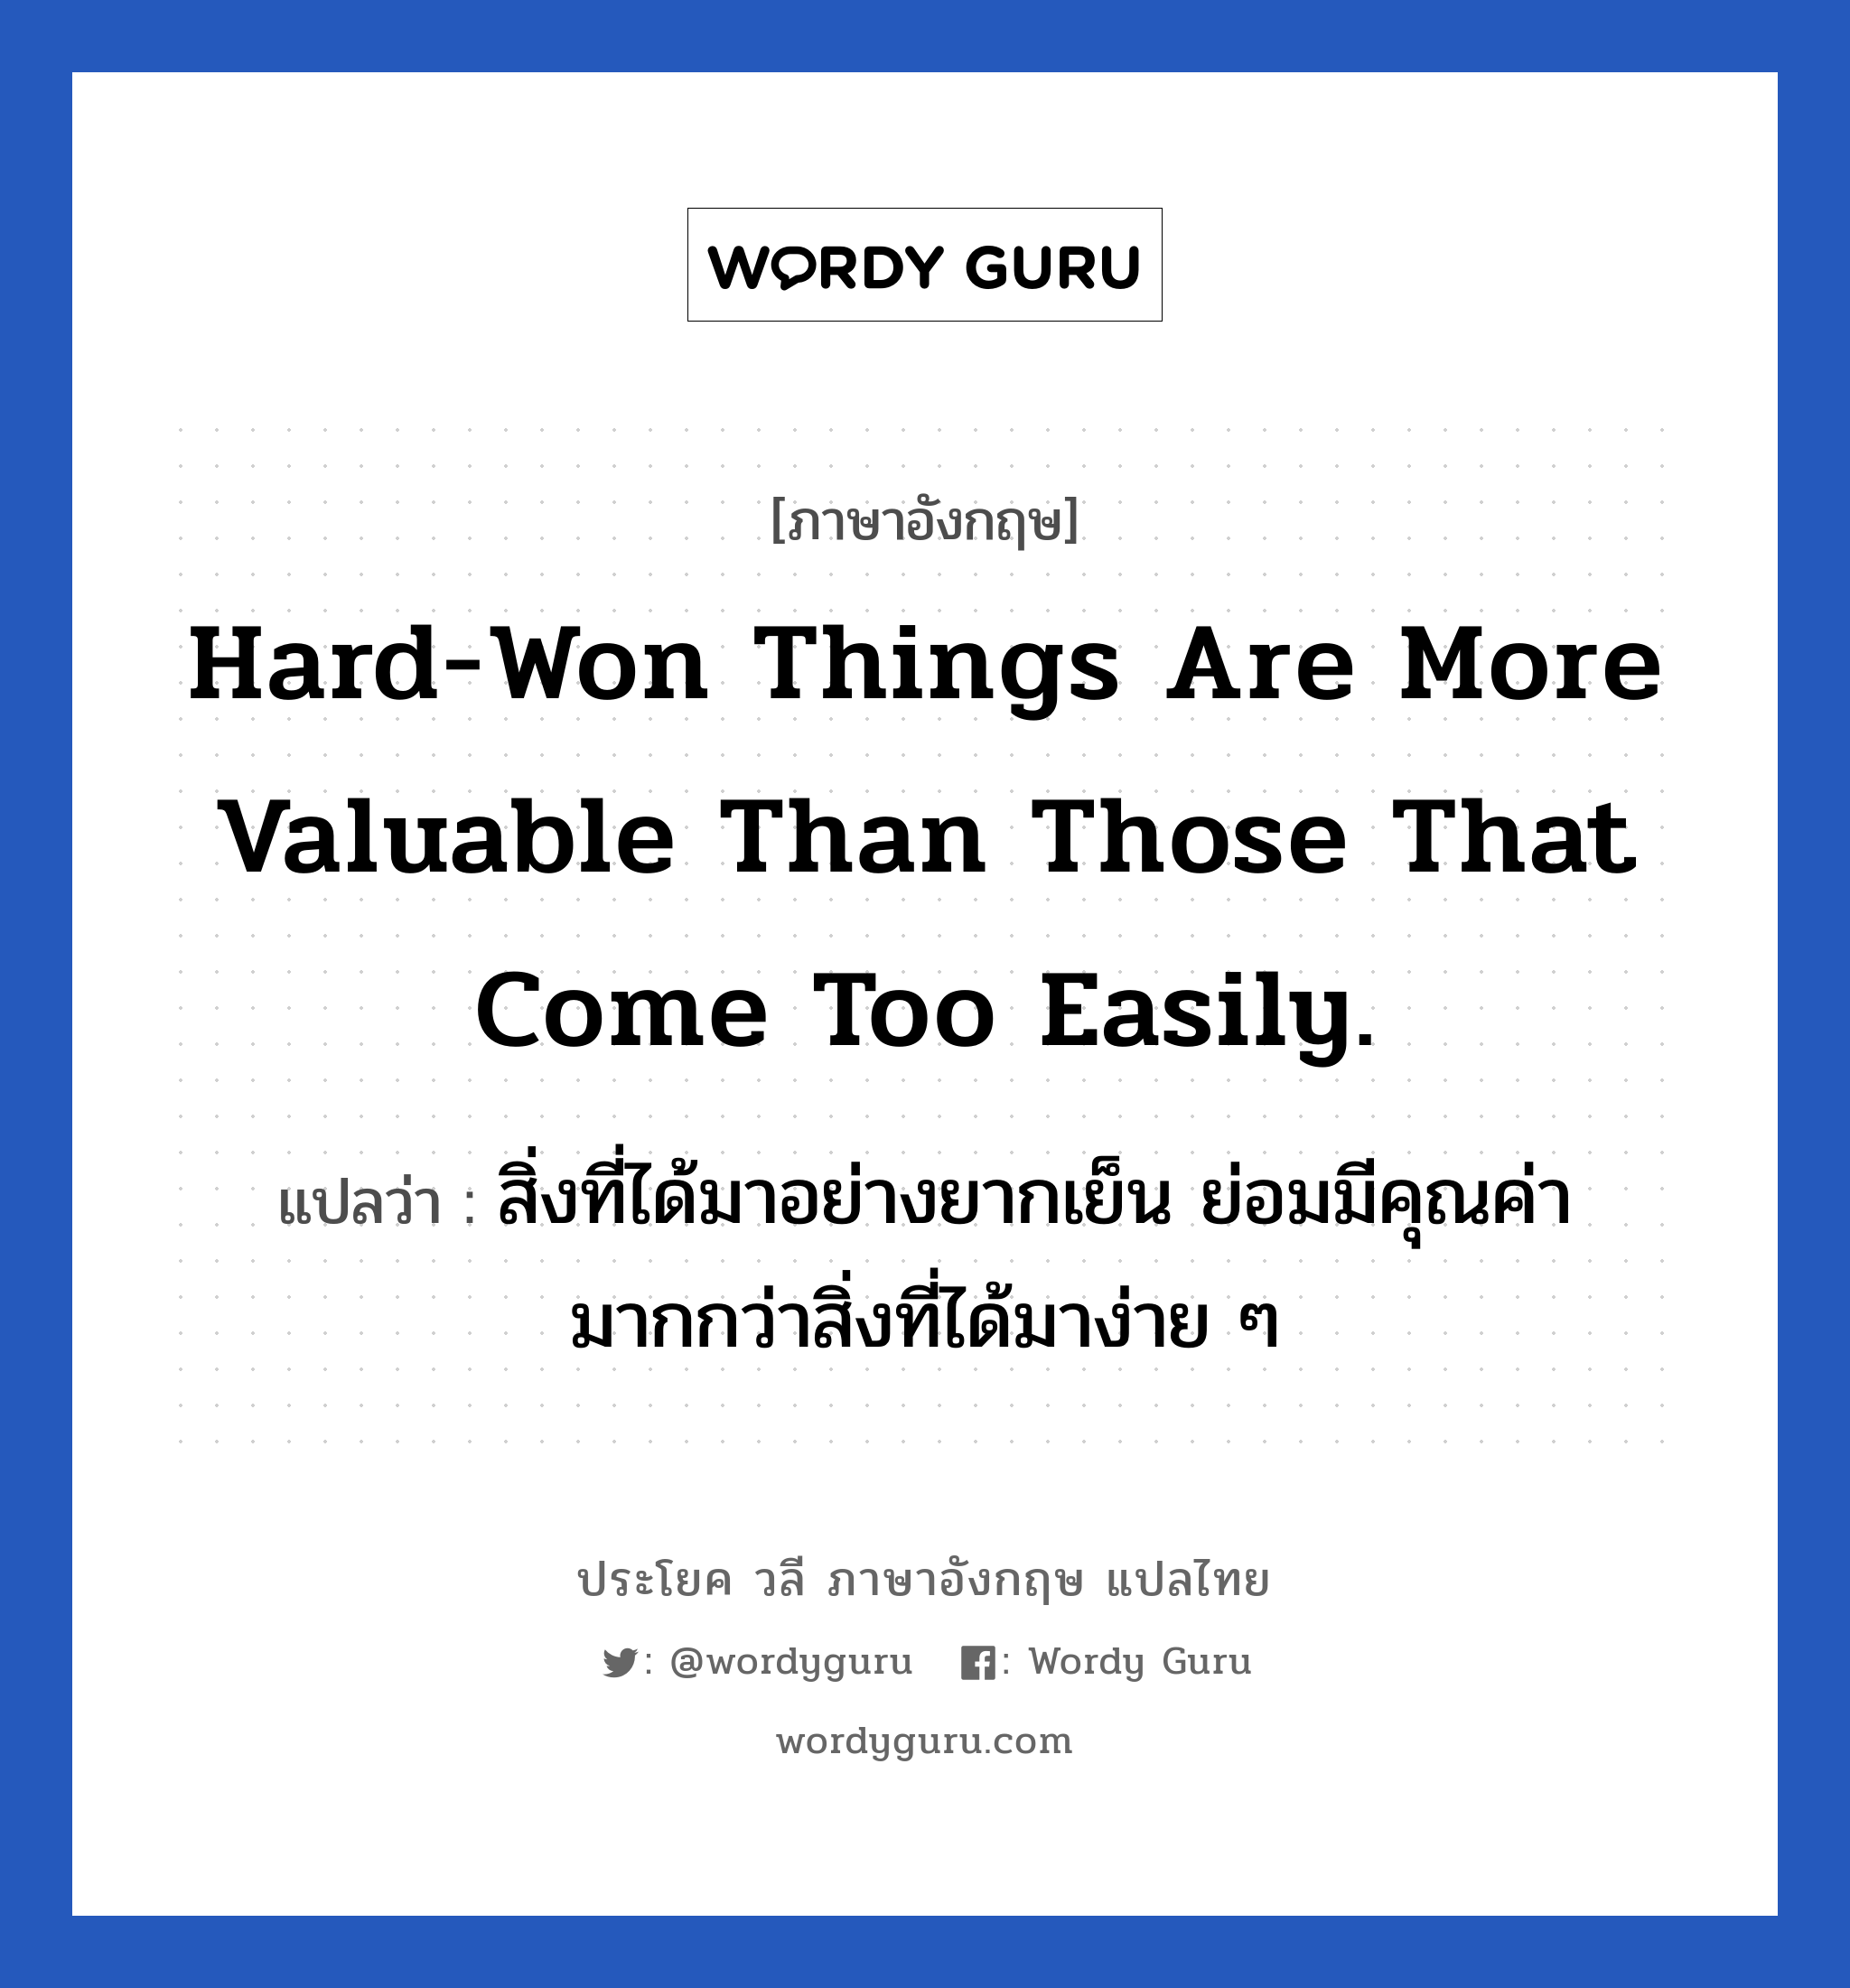 Hard-won things are more valuable than those that come too easily. แปลว่า? เป็นประโยคในกลุ่มประเภท ในที่ทำงาน, วลีภาษาอังกฤษ Hard-won things are more valuable than those that come too easily. แปลว่า สิ่งที่ได้มาอย่างยากเย็น ย่อมมีคุณค่ามากกว่าสิ่งที่ได้มาง่าย ๆ หมวด ในที่ทำงาน